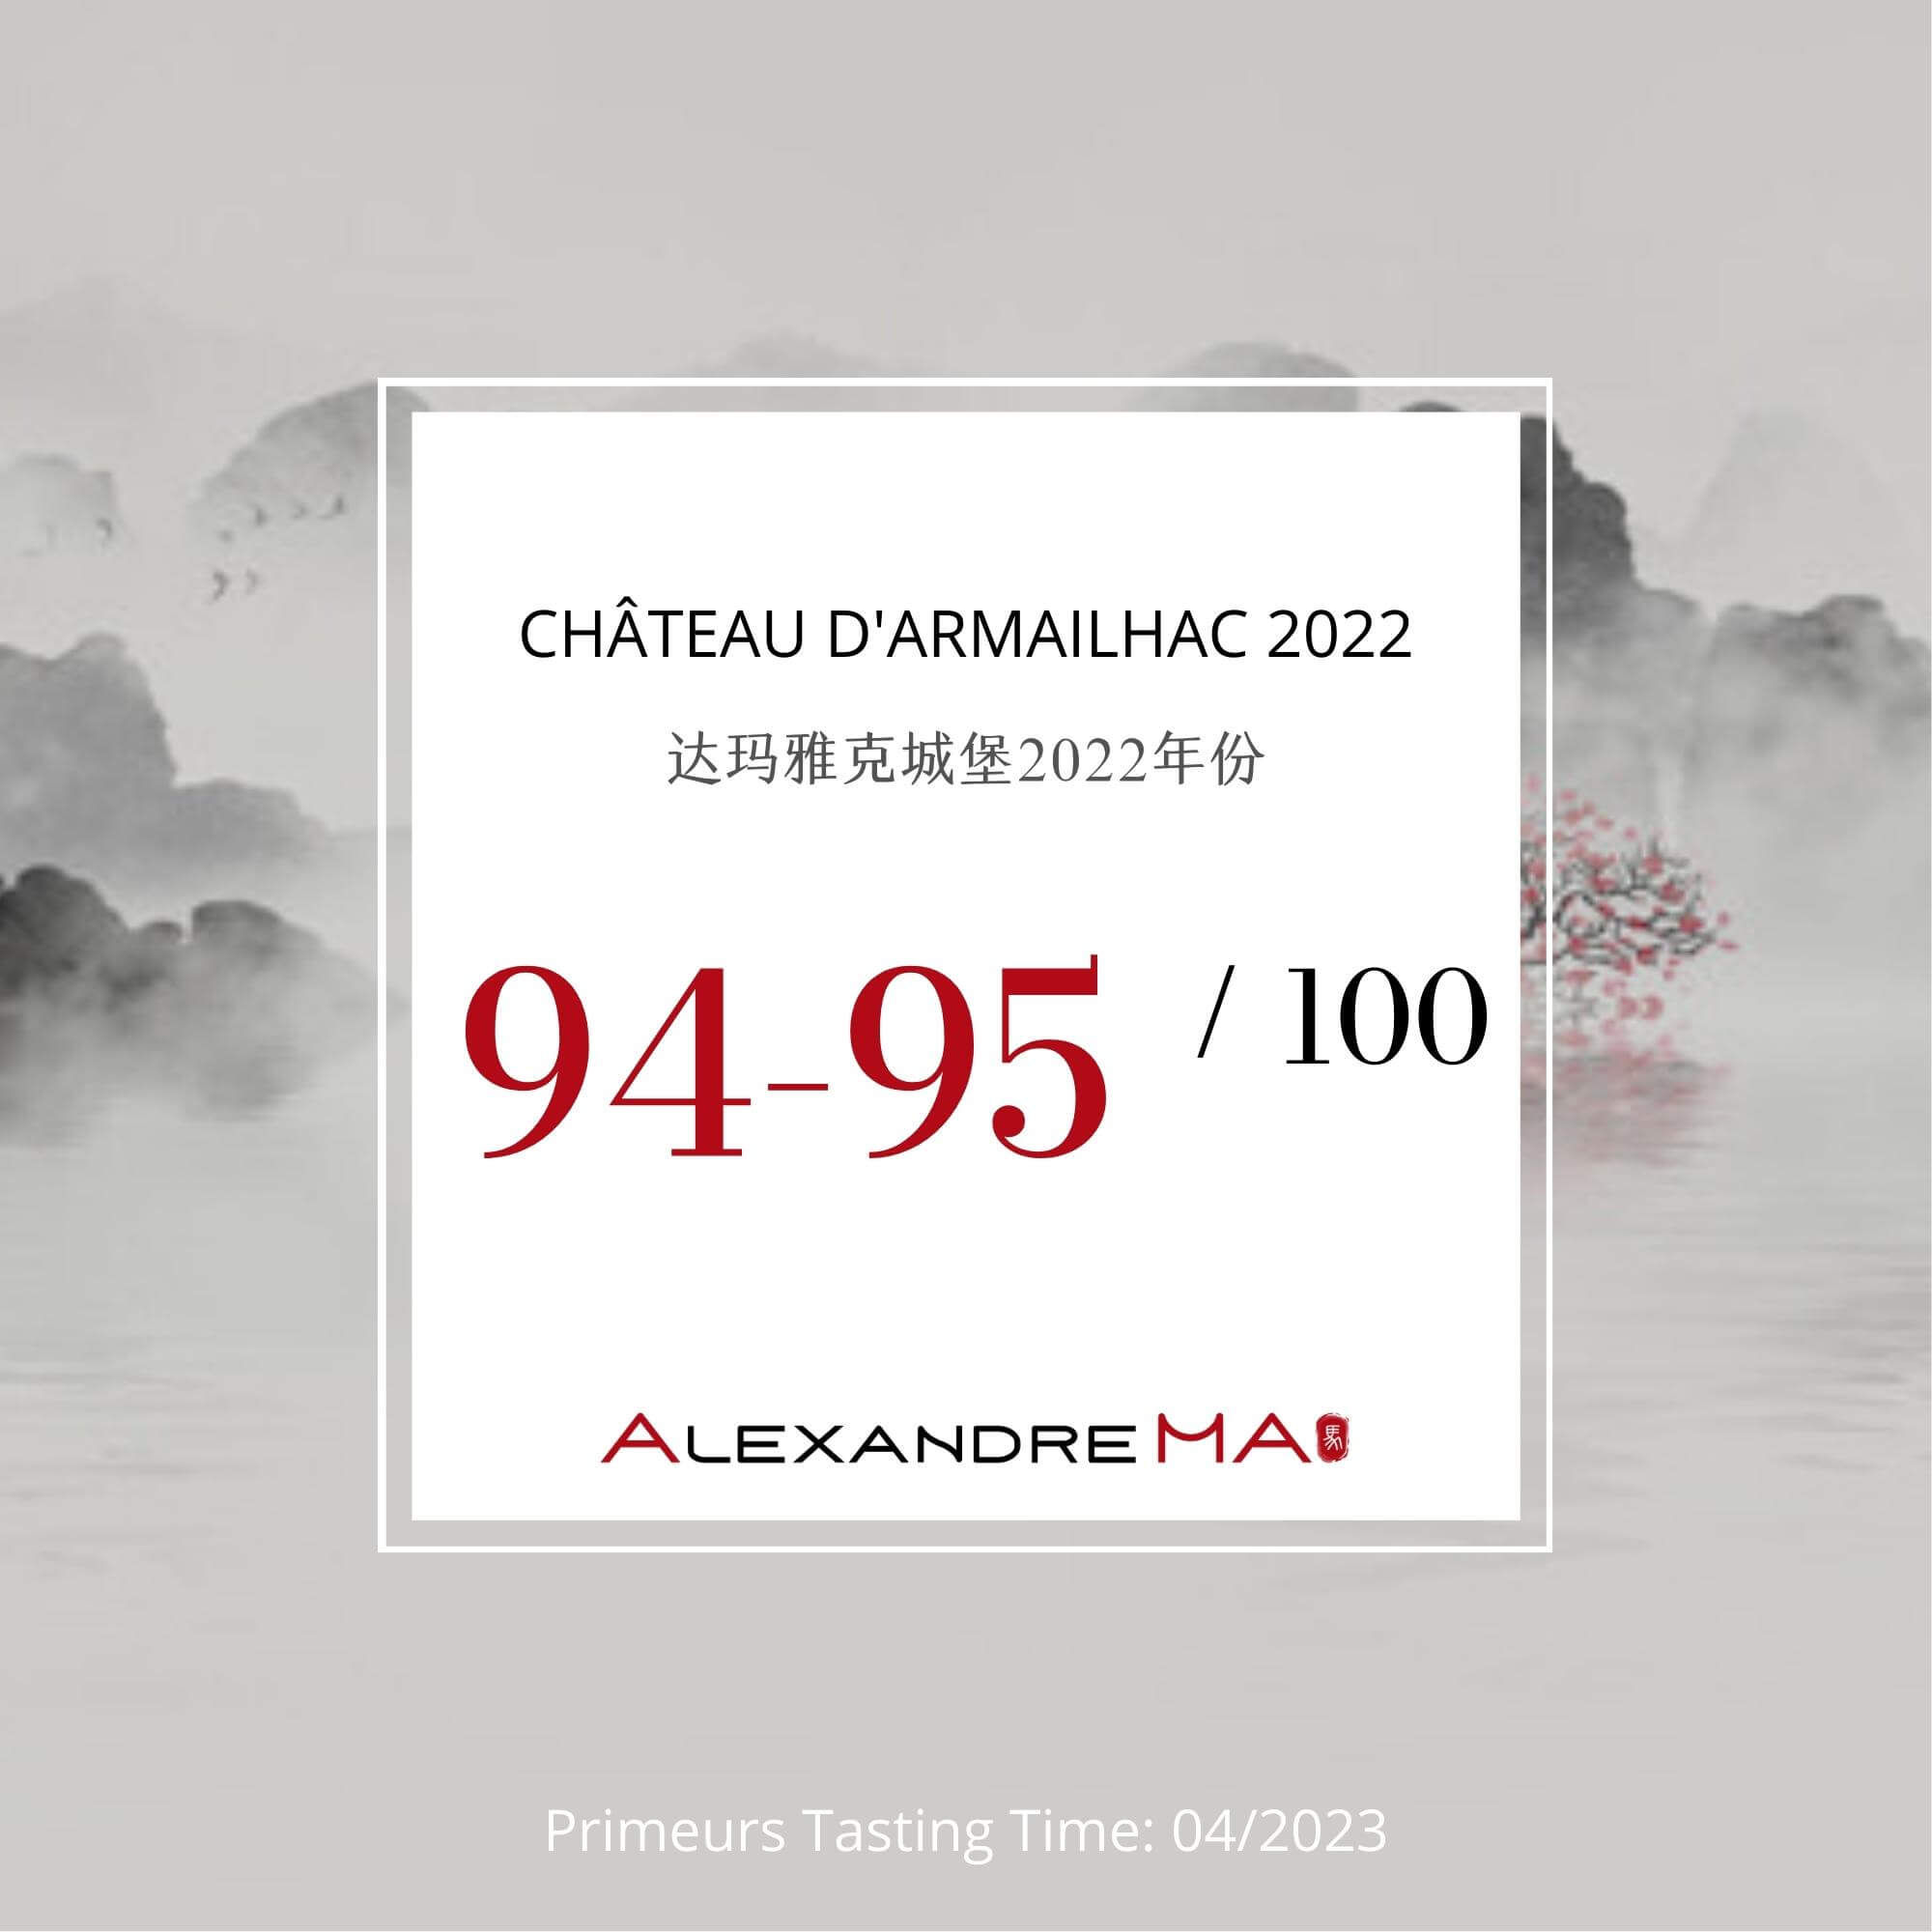 Château d’Armailhac 2022 Primeurs - Alexandre MA